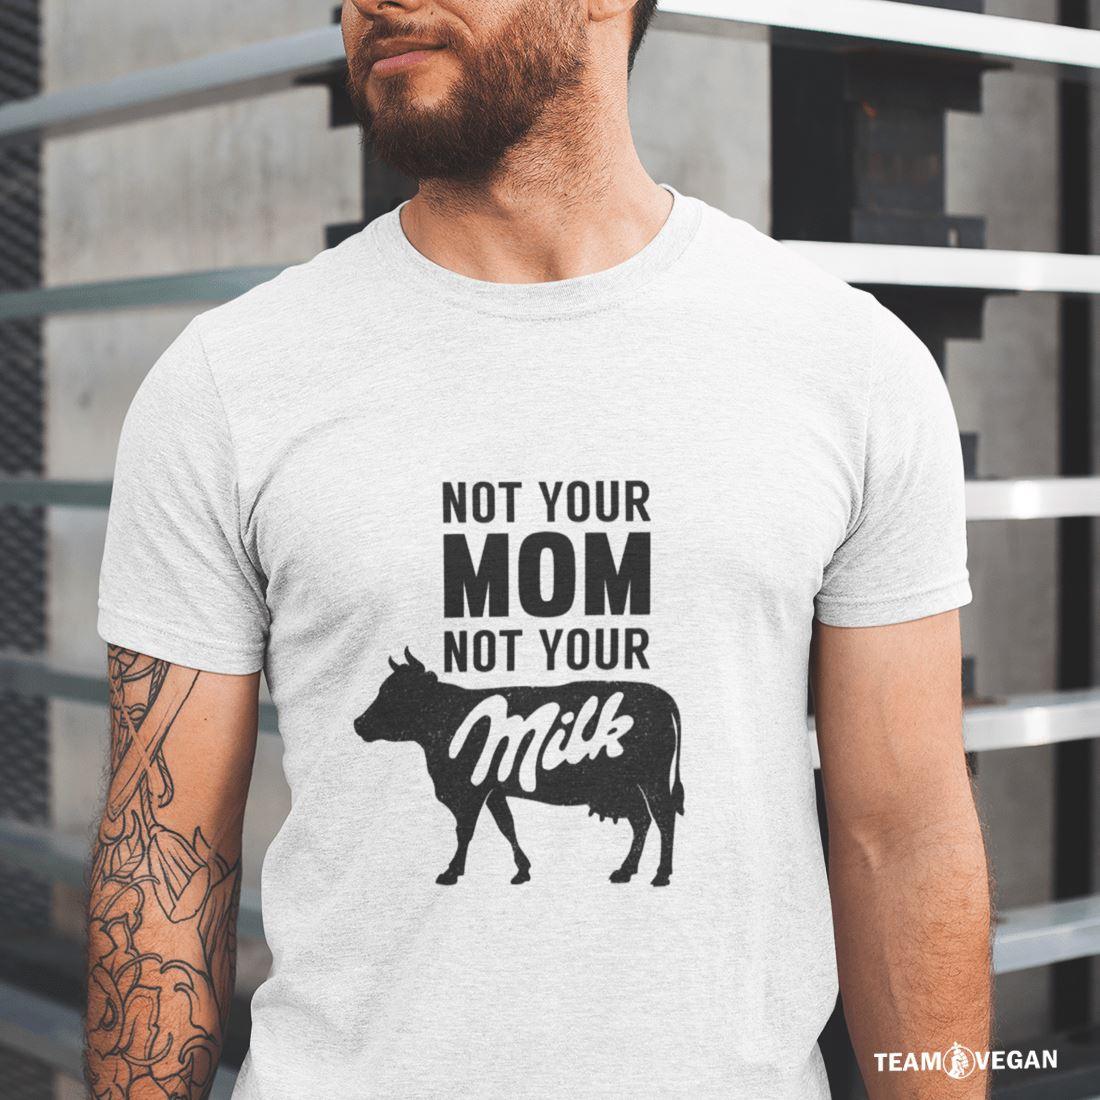 Not your mom not your milk - Unisex Organic Shirt Rocker T-Shirt ST/ST Shirtee 